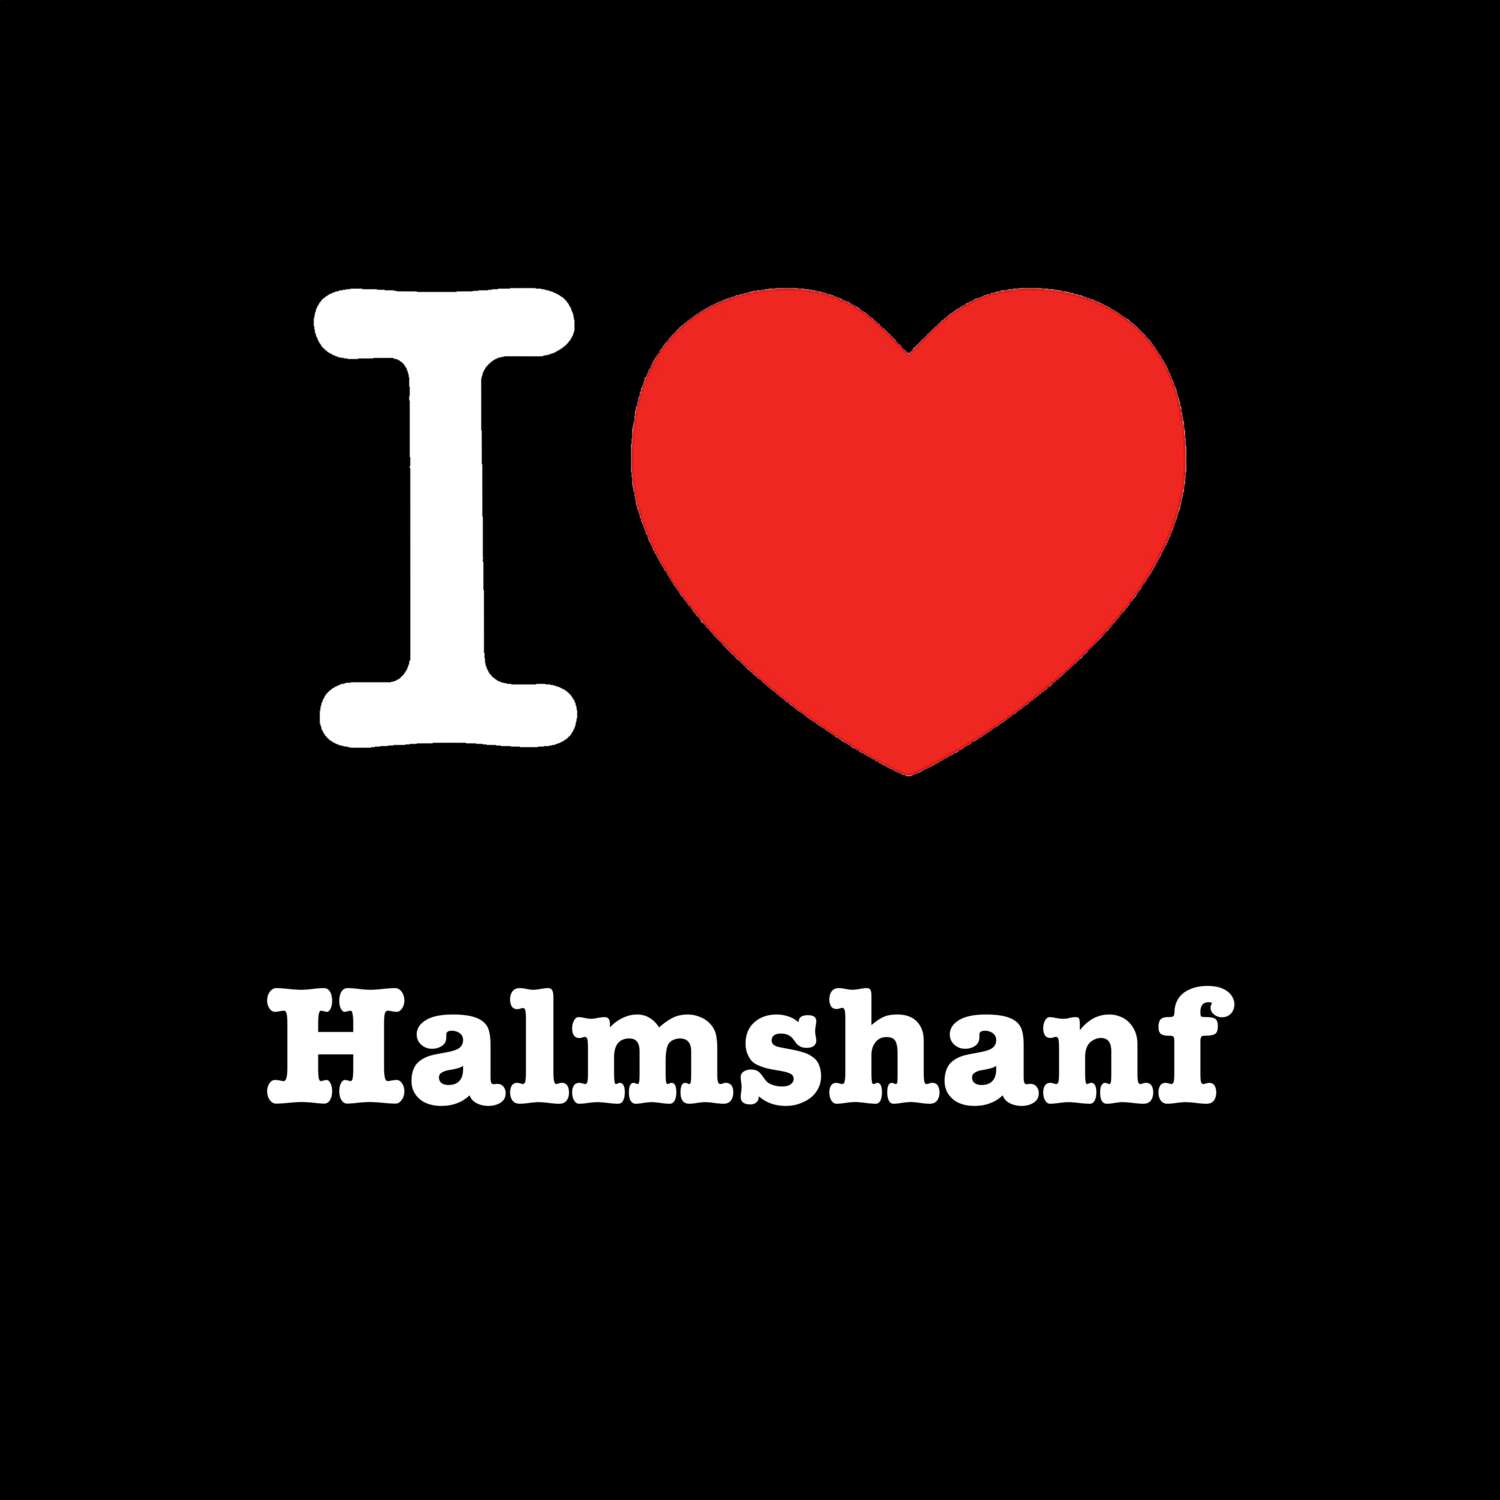 Halmshanf T-Shirt »I love«